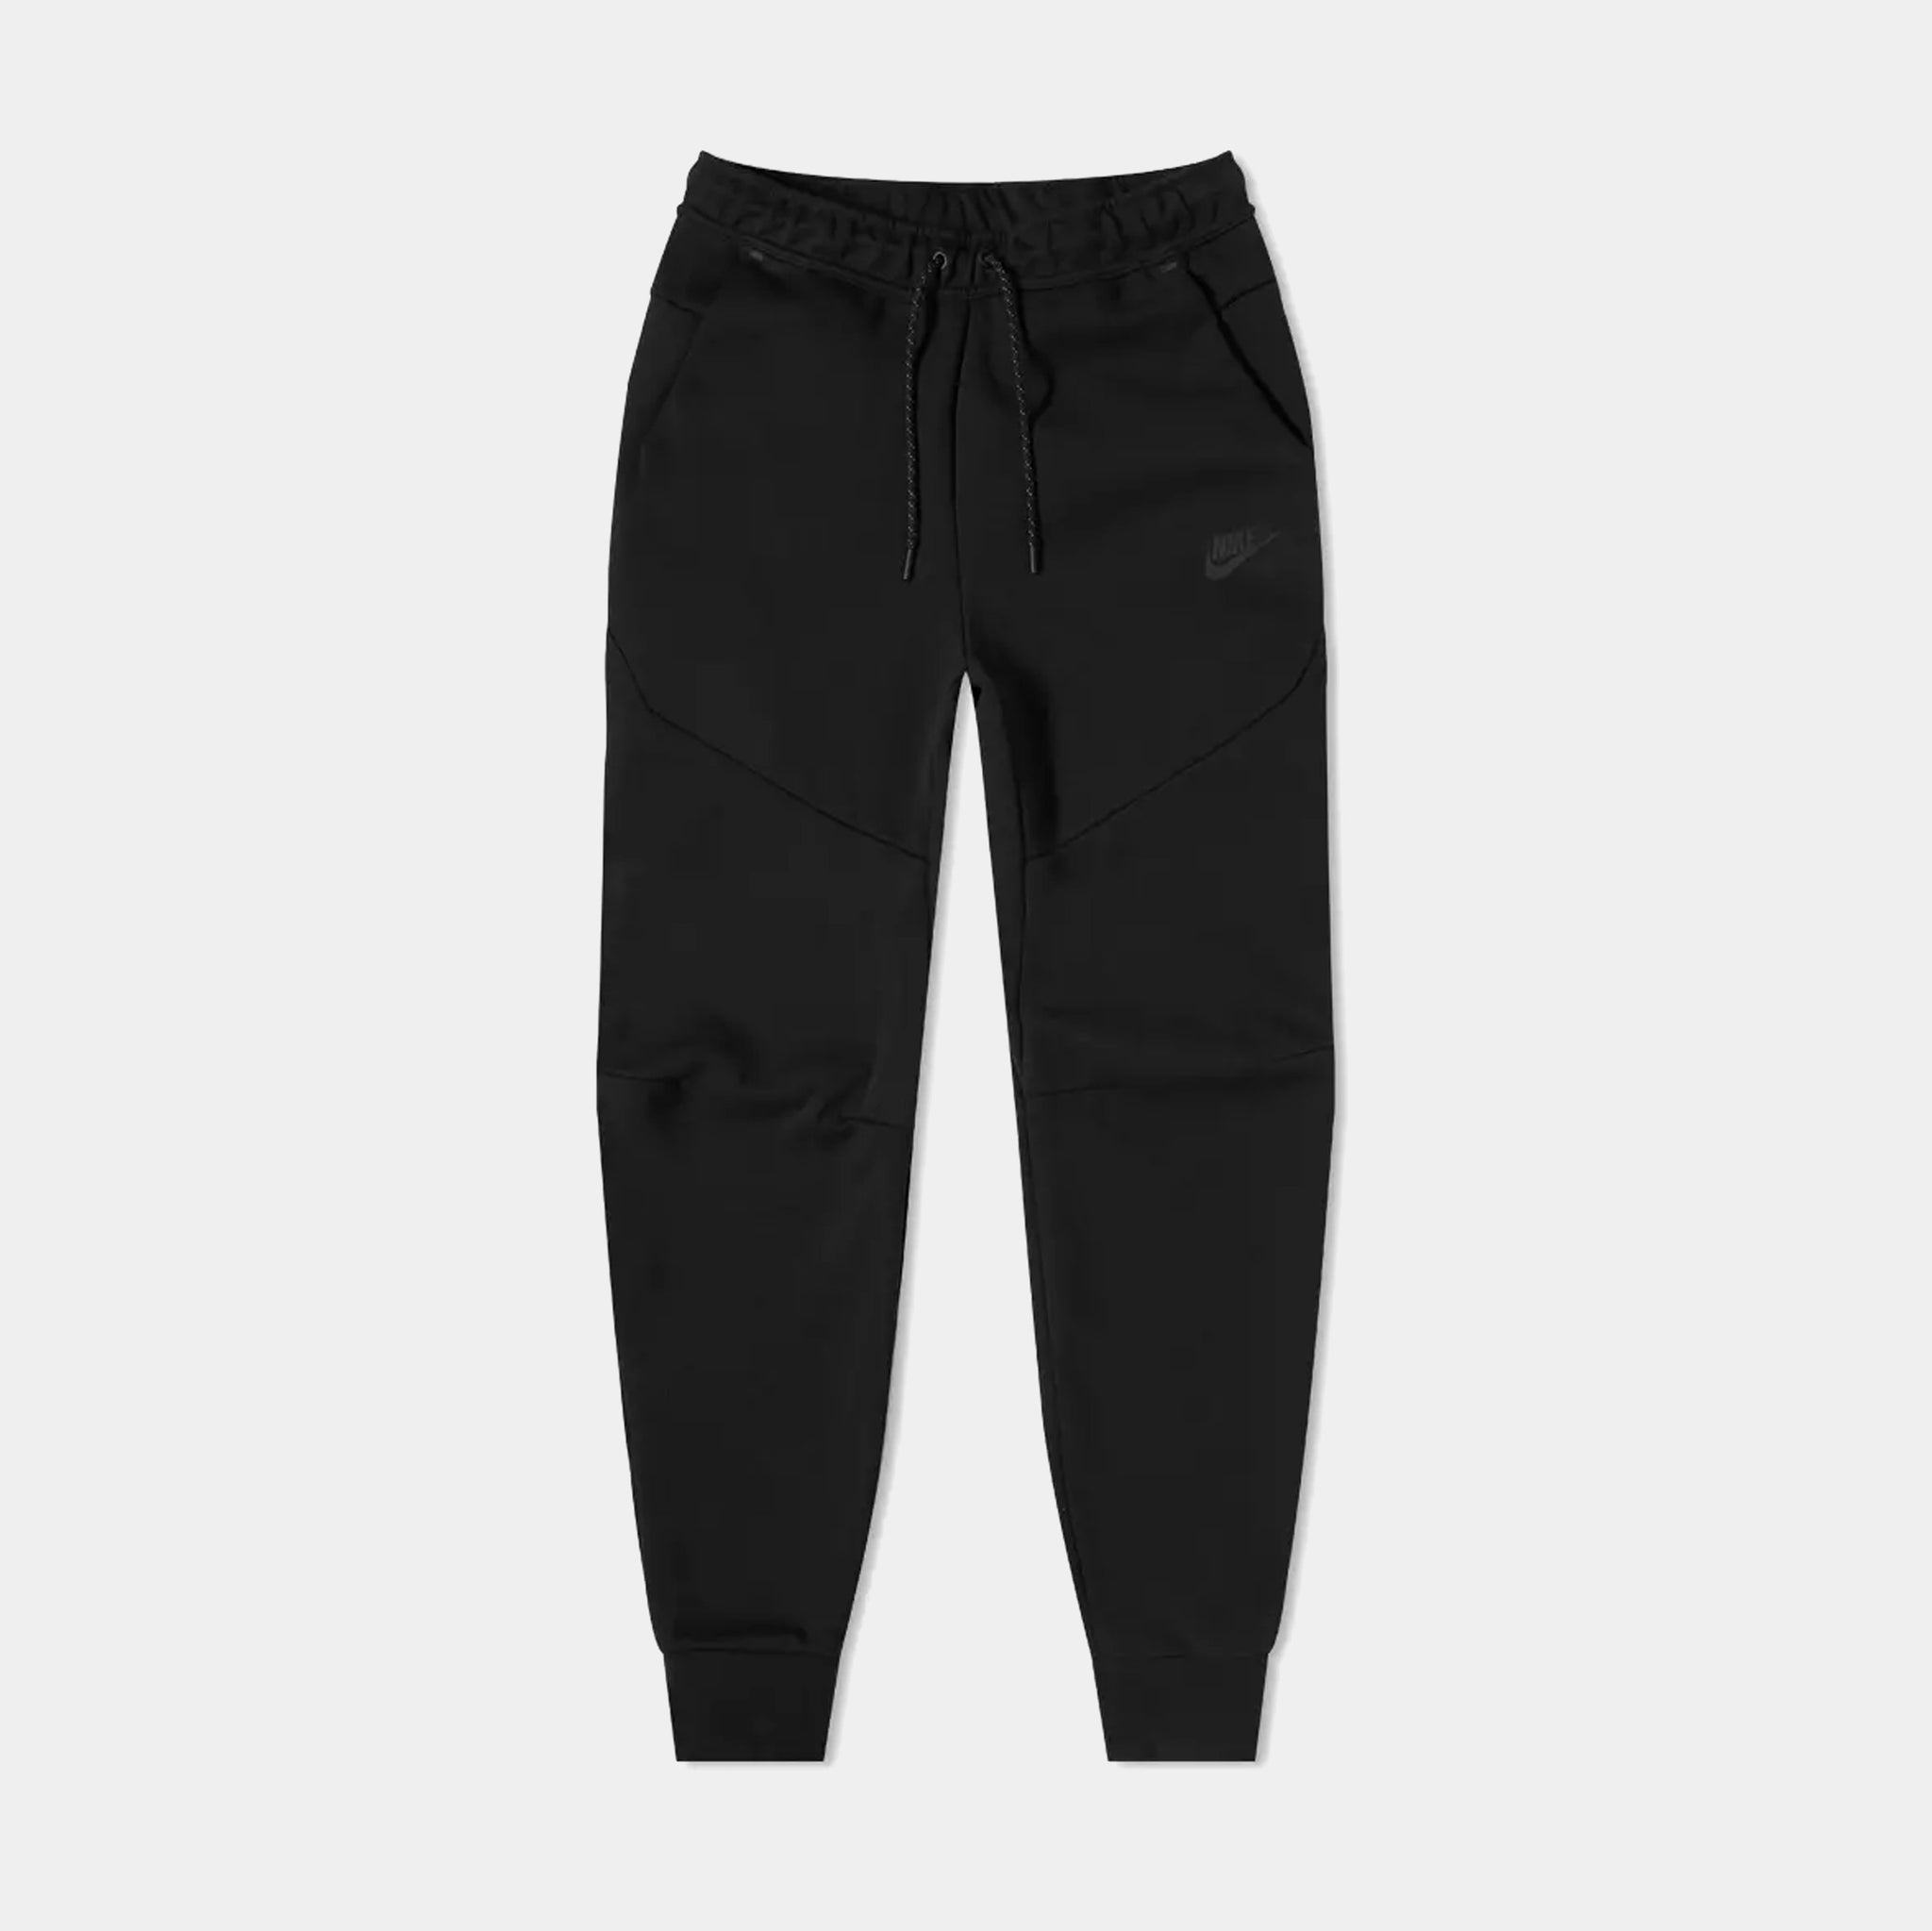 Men's Nike Red/Black Sportswear Swoosh Tech Fleece Pants - L